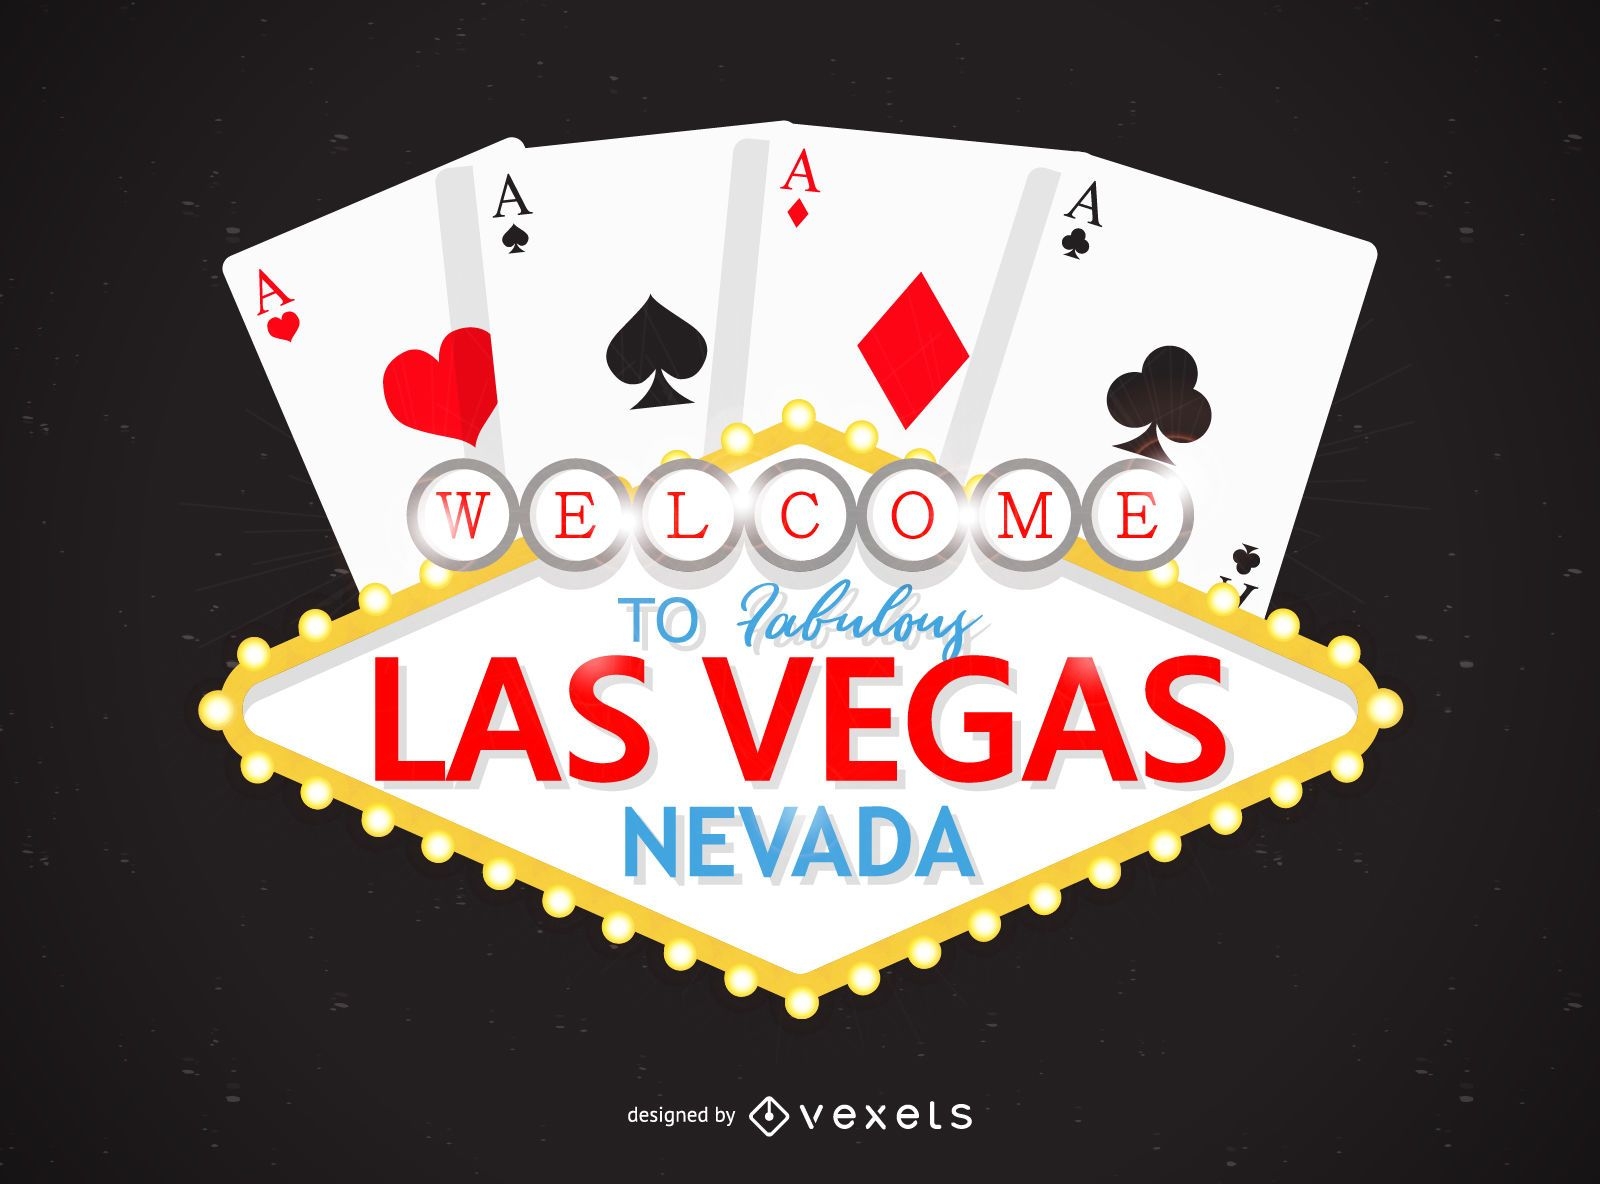 Las Vegas Casino Logos